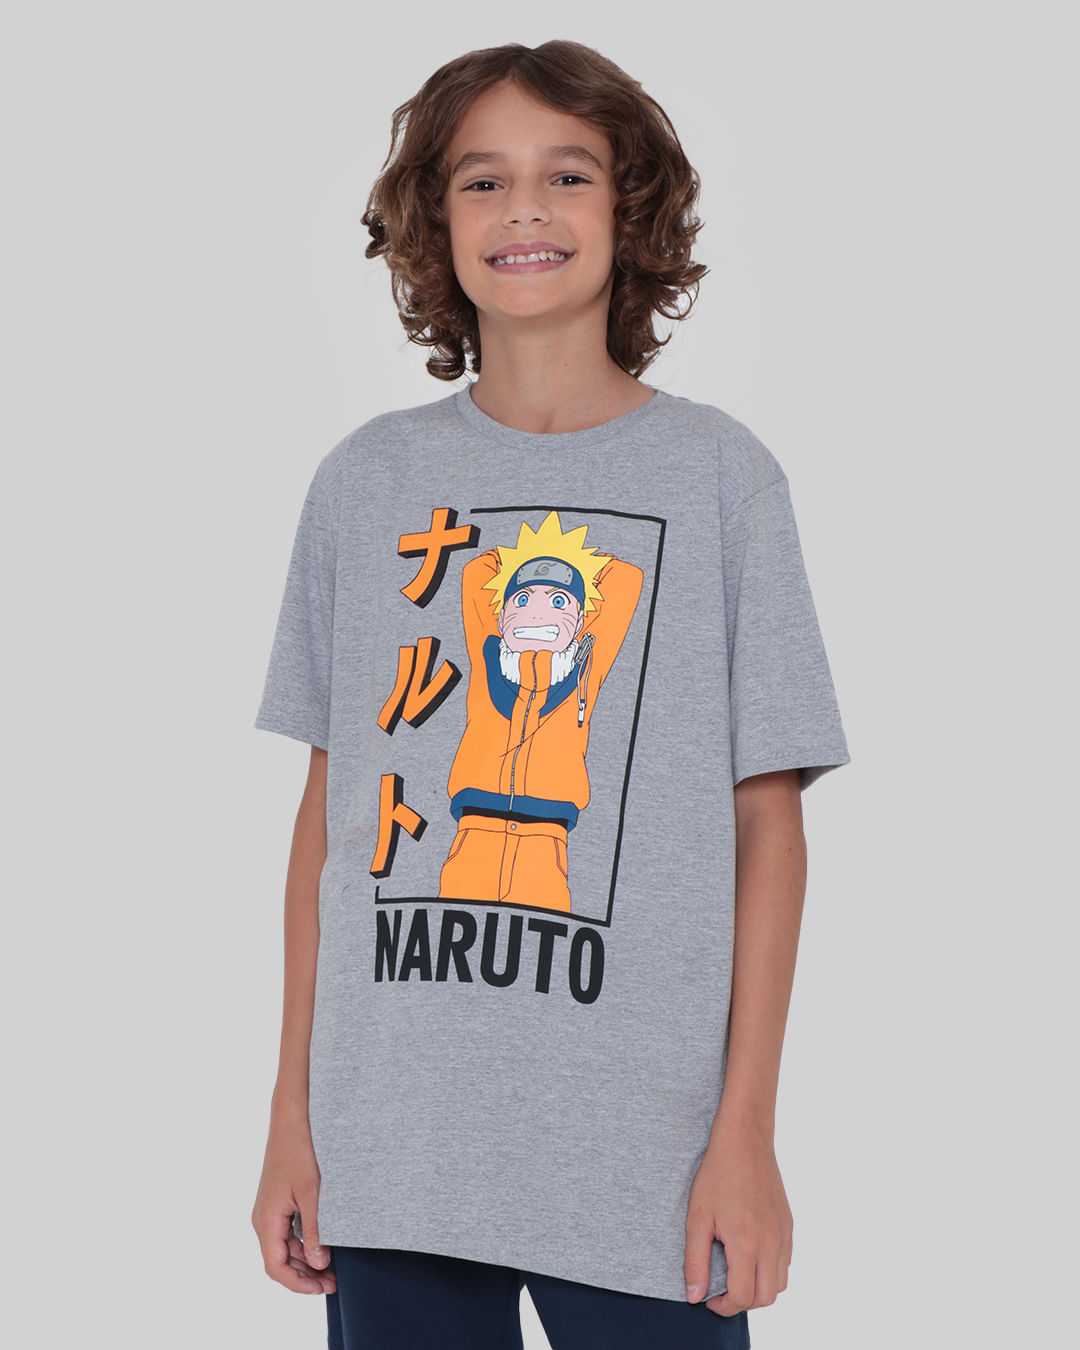 Camiseta-Juvenil-Naruto-Mescla-Cinza